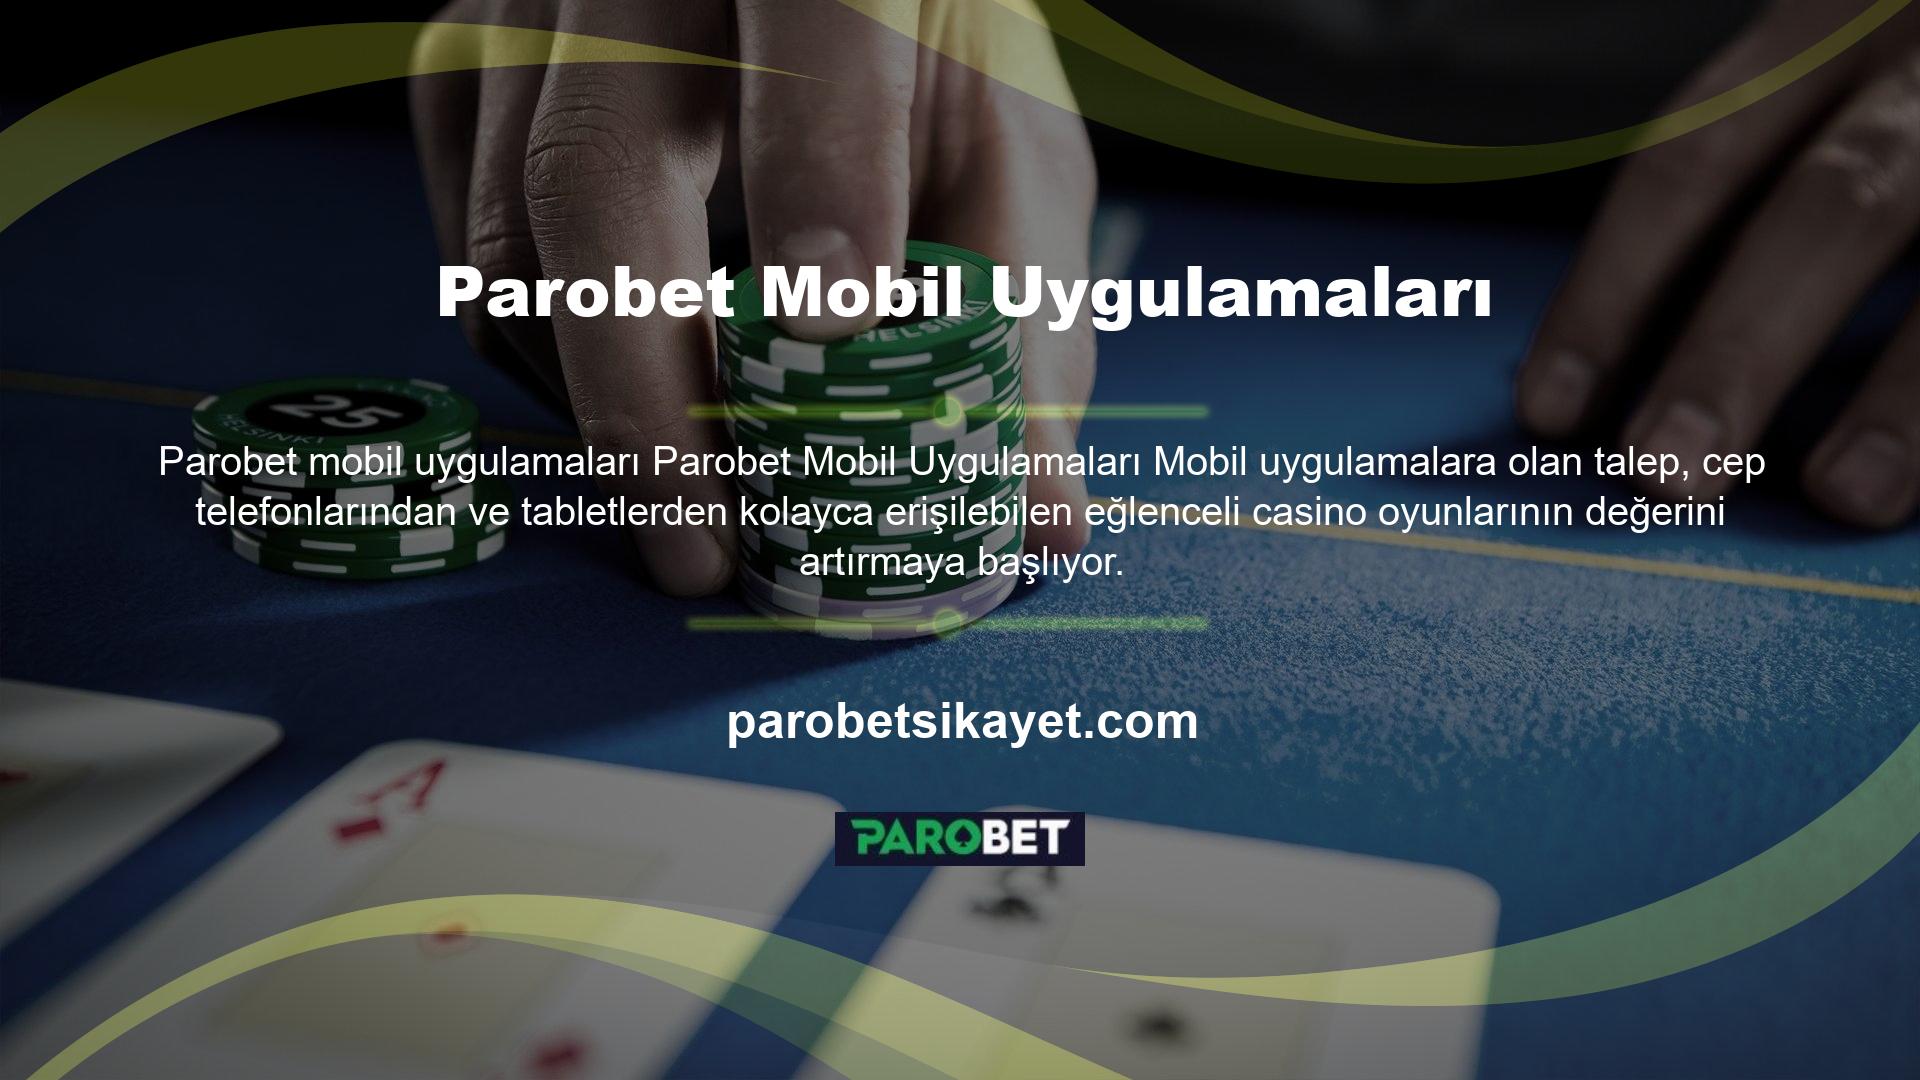 Parobet mobil uygulaması, online olarak yapılabilecek tüm işlemlerin anında tadını çıkarma, yüksek riskleri kabul etme ve hızlı ödeme imkanı sunan uygulamanın özel bir parçasıdır